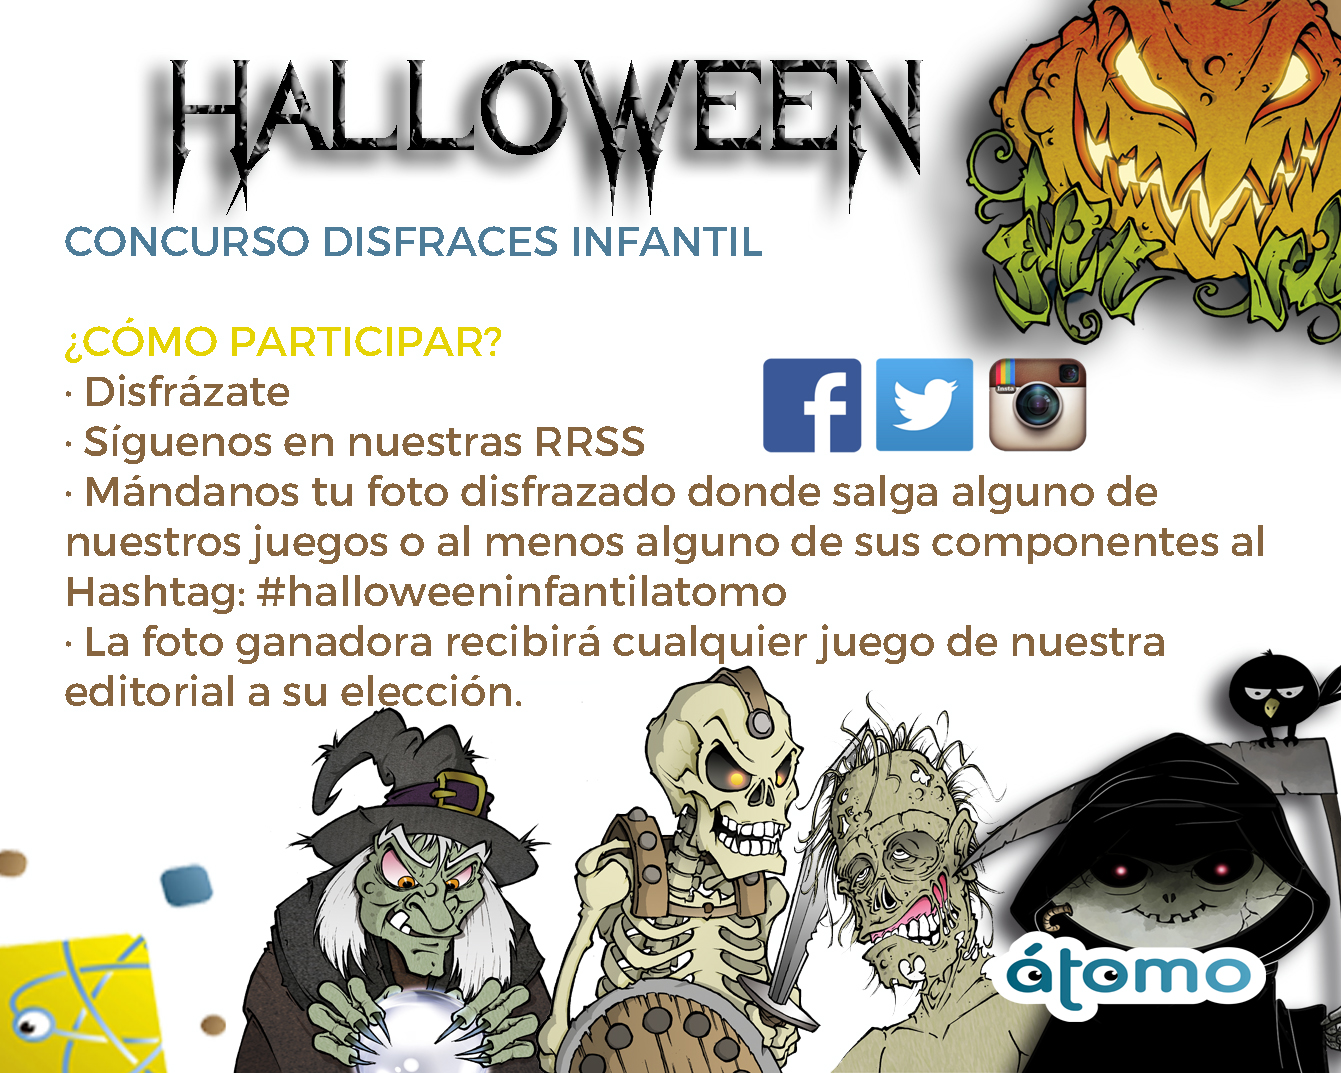 Información concurso infantil Halloween 2019